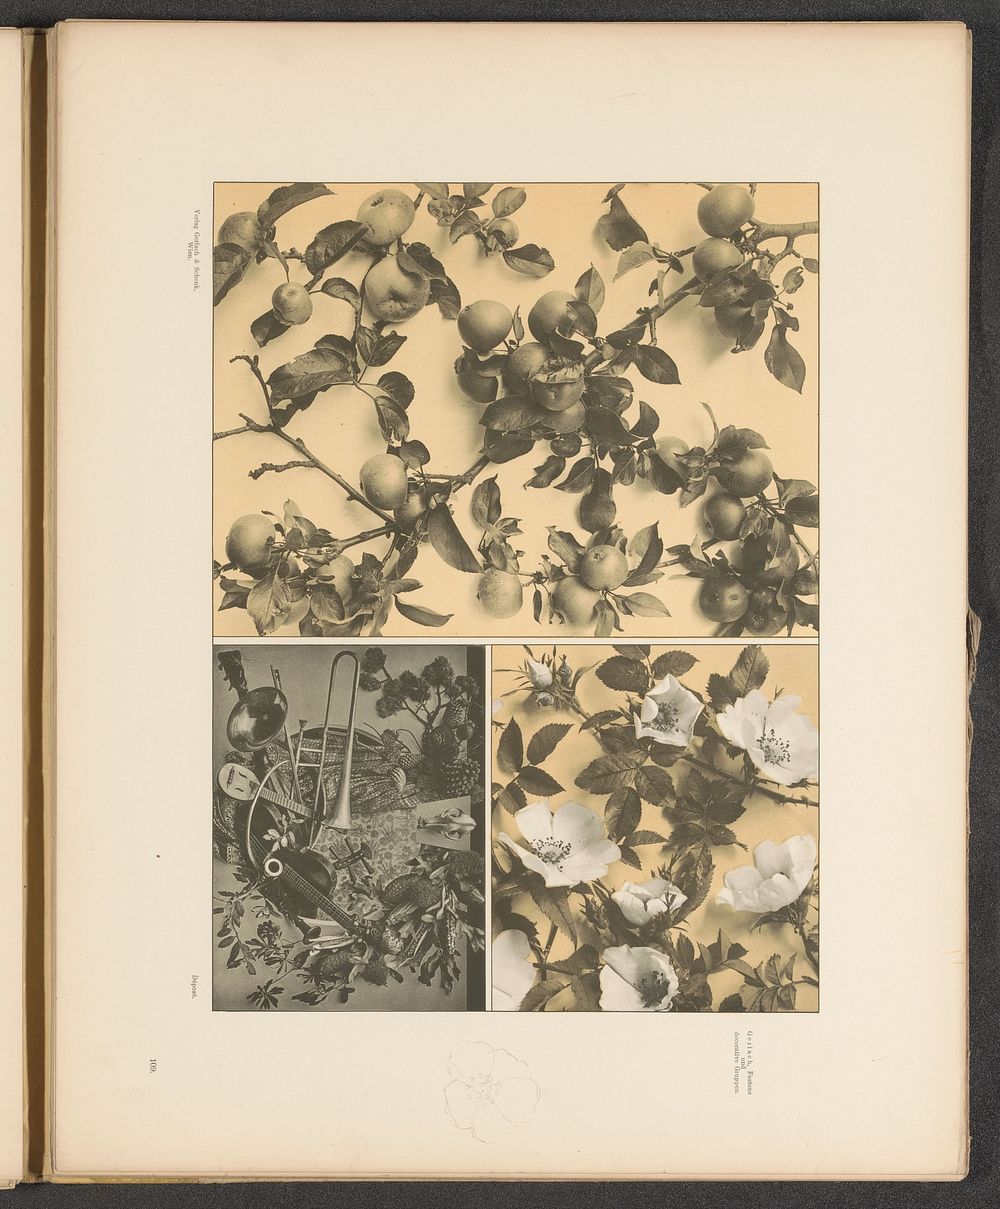 Vlakken met heggenrozen, appelboomtakken en een festoen met muziekinstrumenten (c. 1887 - in or before 1897) by anonymous…